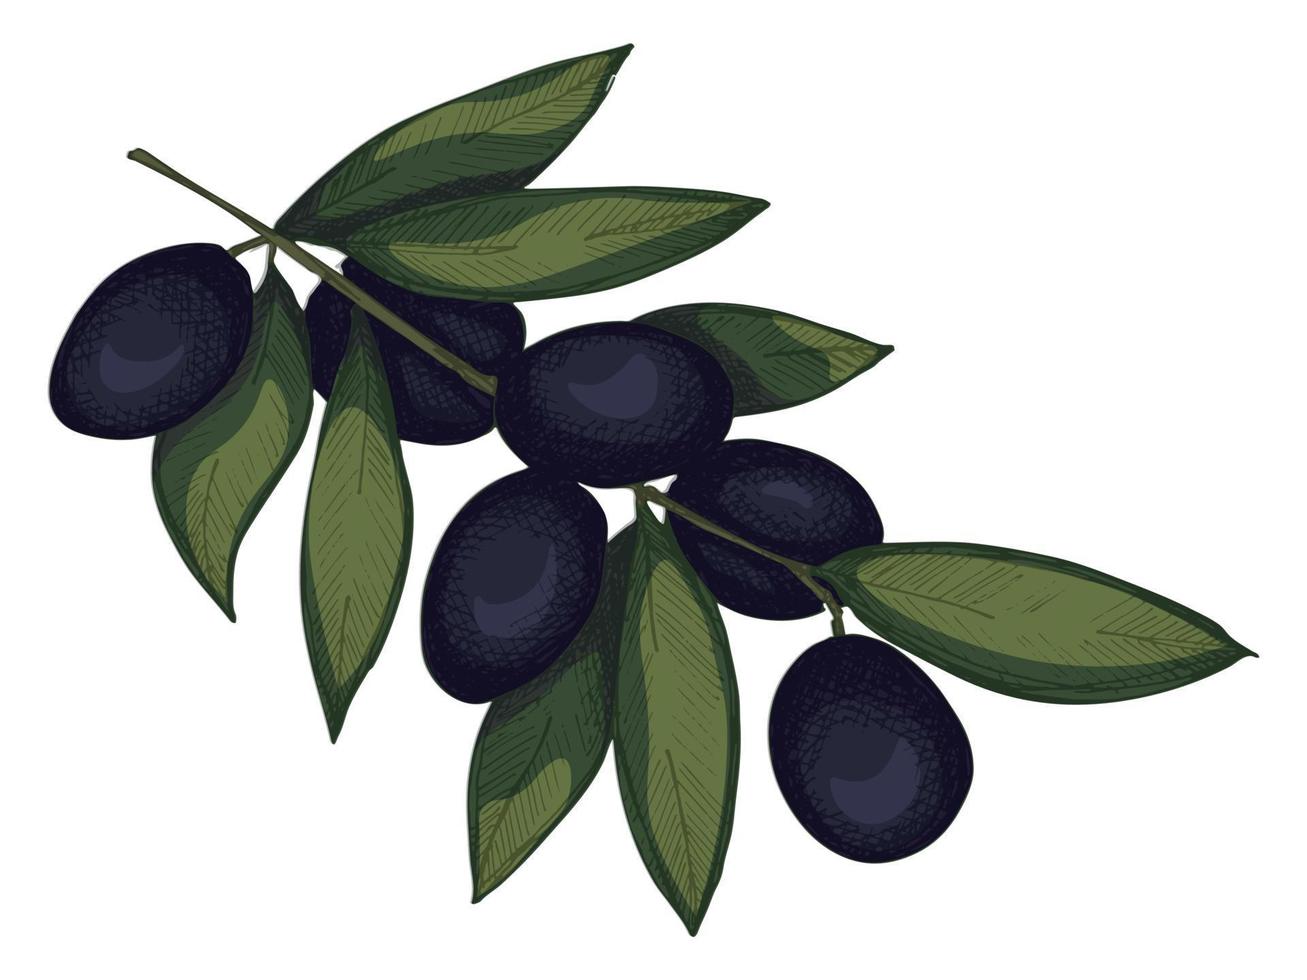 ilustração em vetor de ramo de oliveira. colorido mão desenhada eco comida clipart isolado no fundo branco.